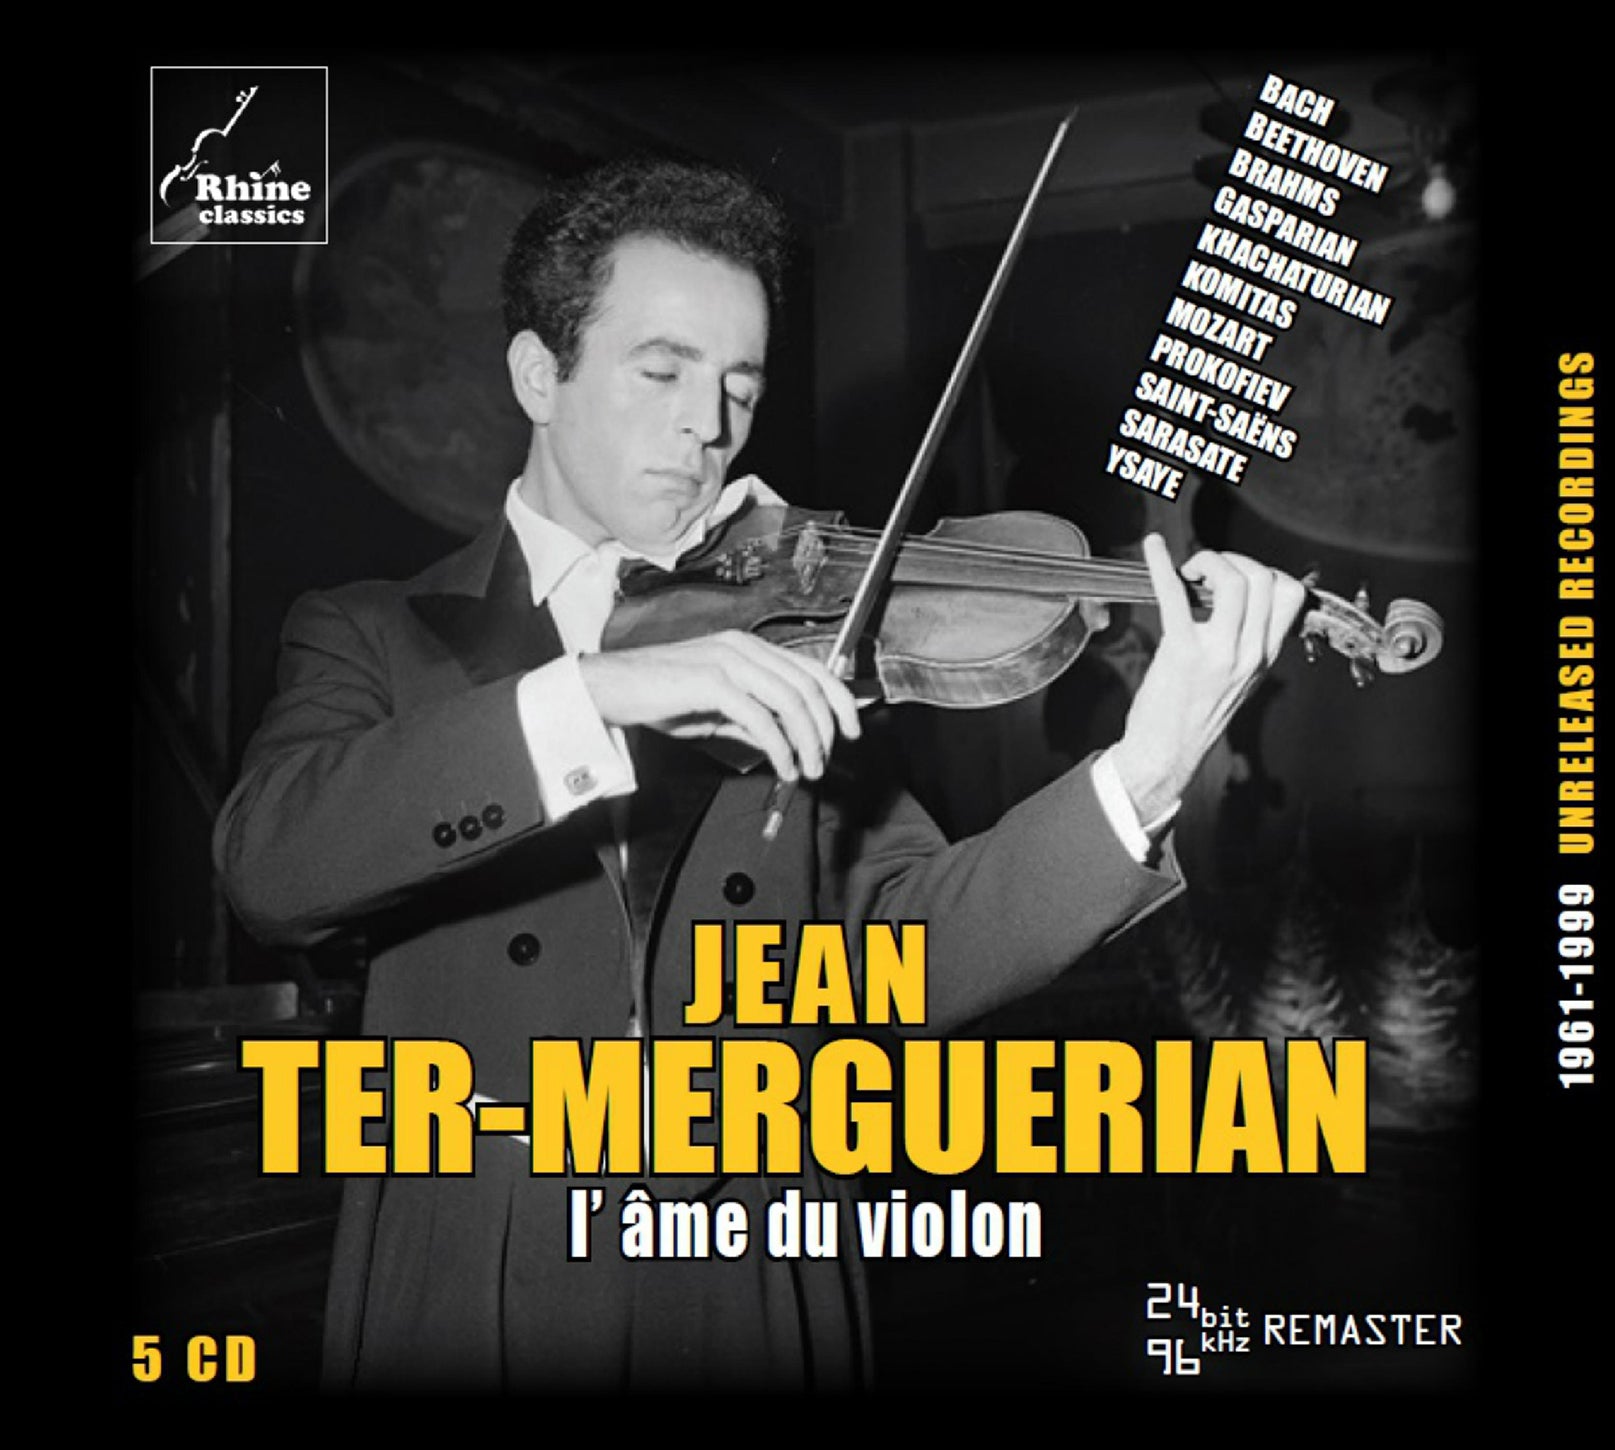 l’ ame du violon / Ter-Merguerian